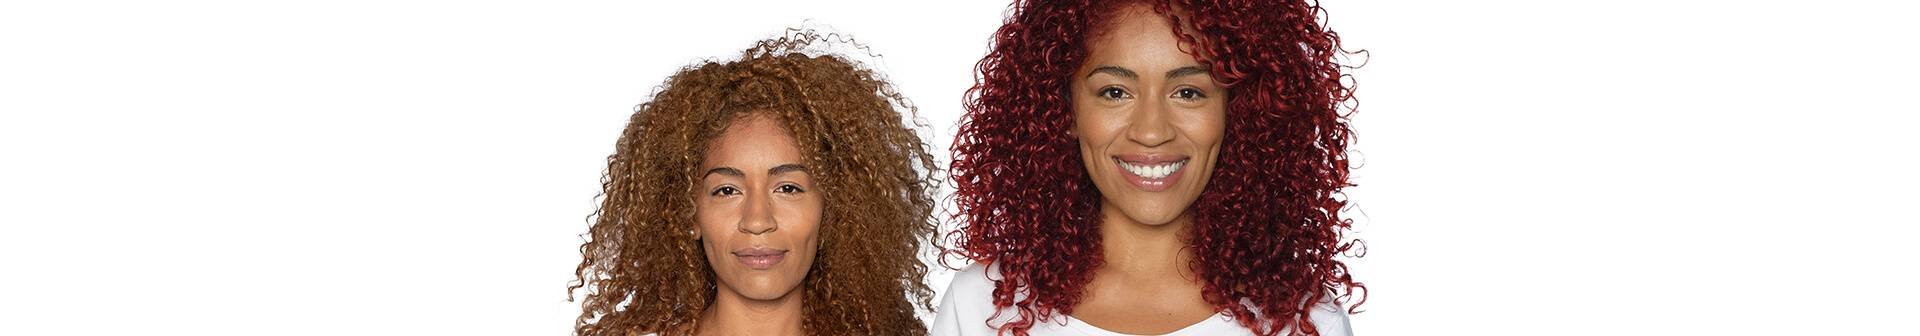 Leer meer over de porositeit van je haar en de juiste verftechniek. Volg onze 4 stappen om je haar voor te bereiden zodat je haarkleuring niet kan mislukken!  